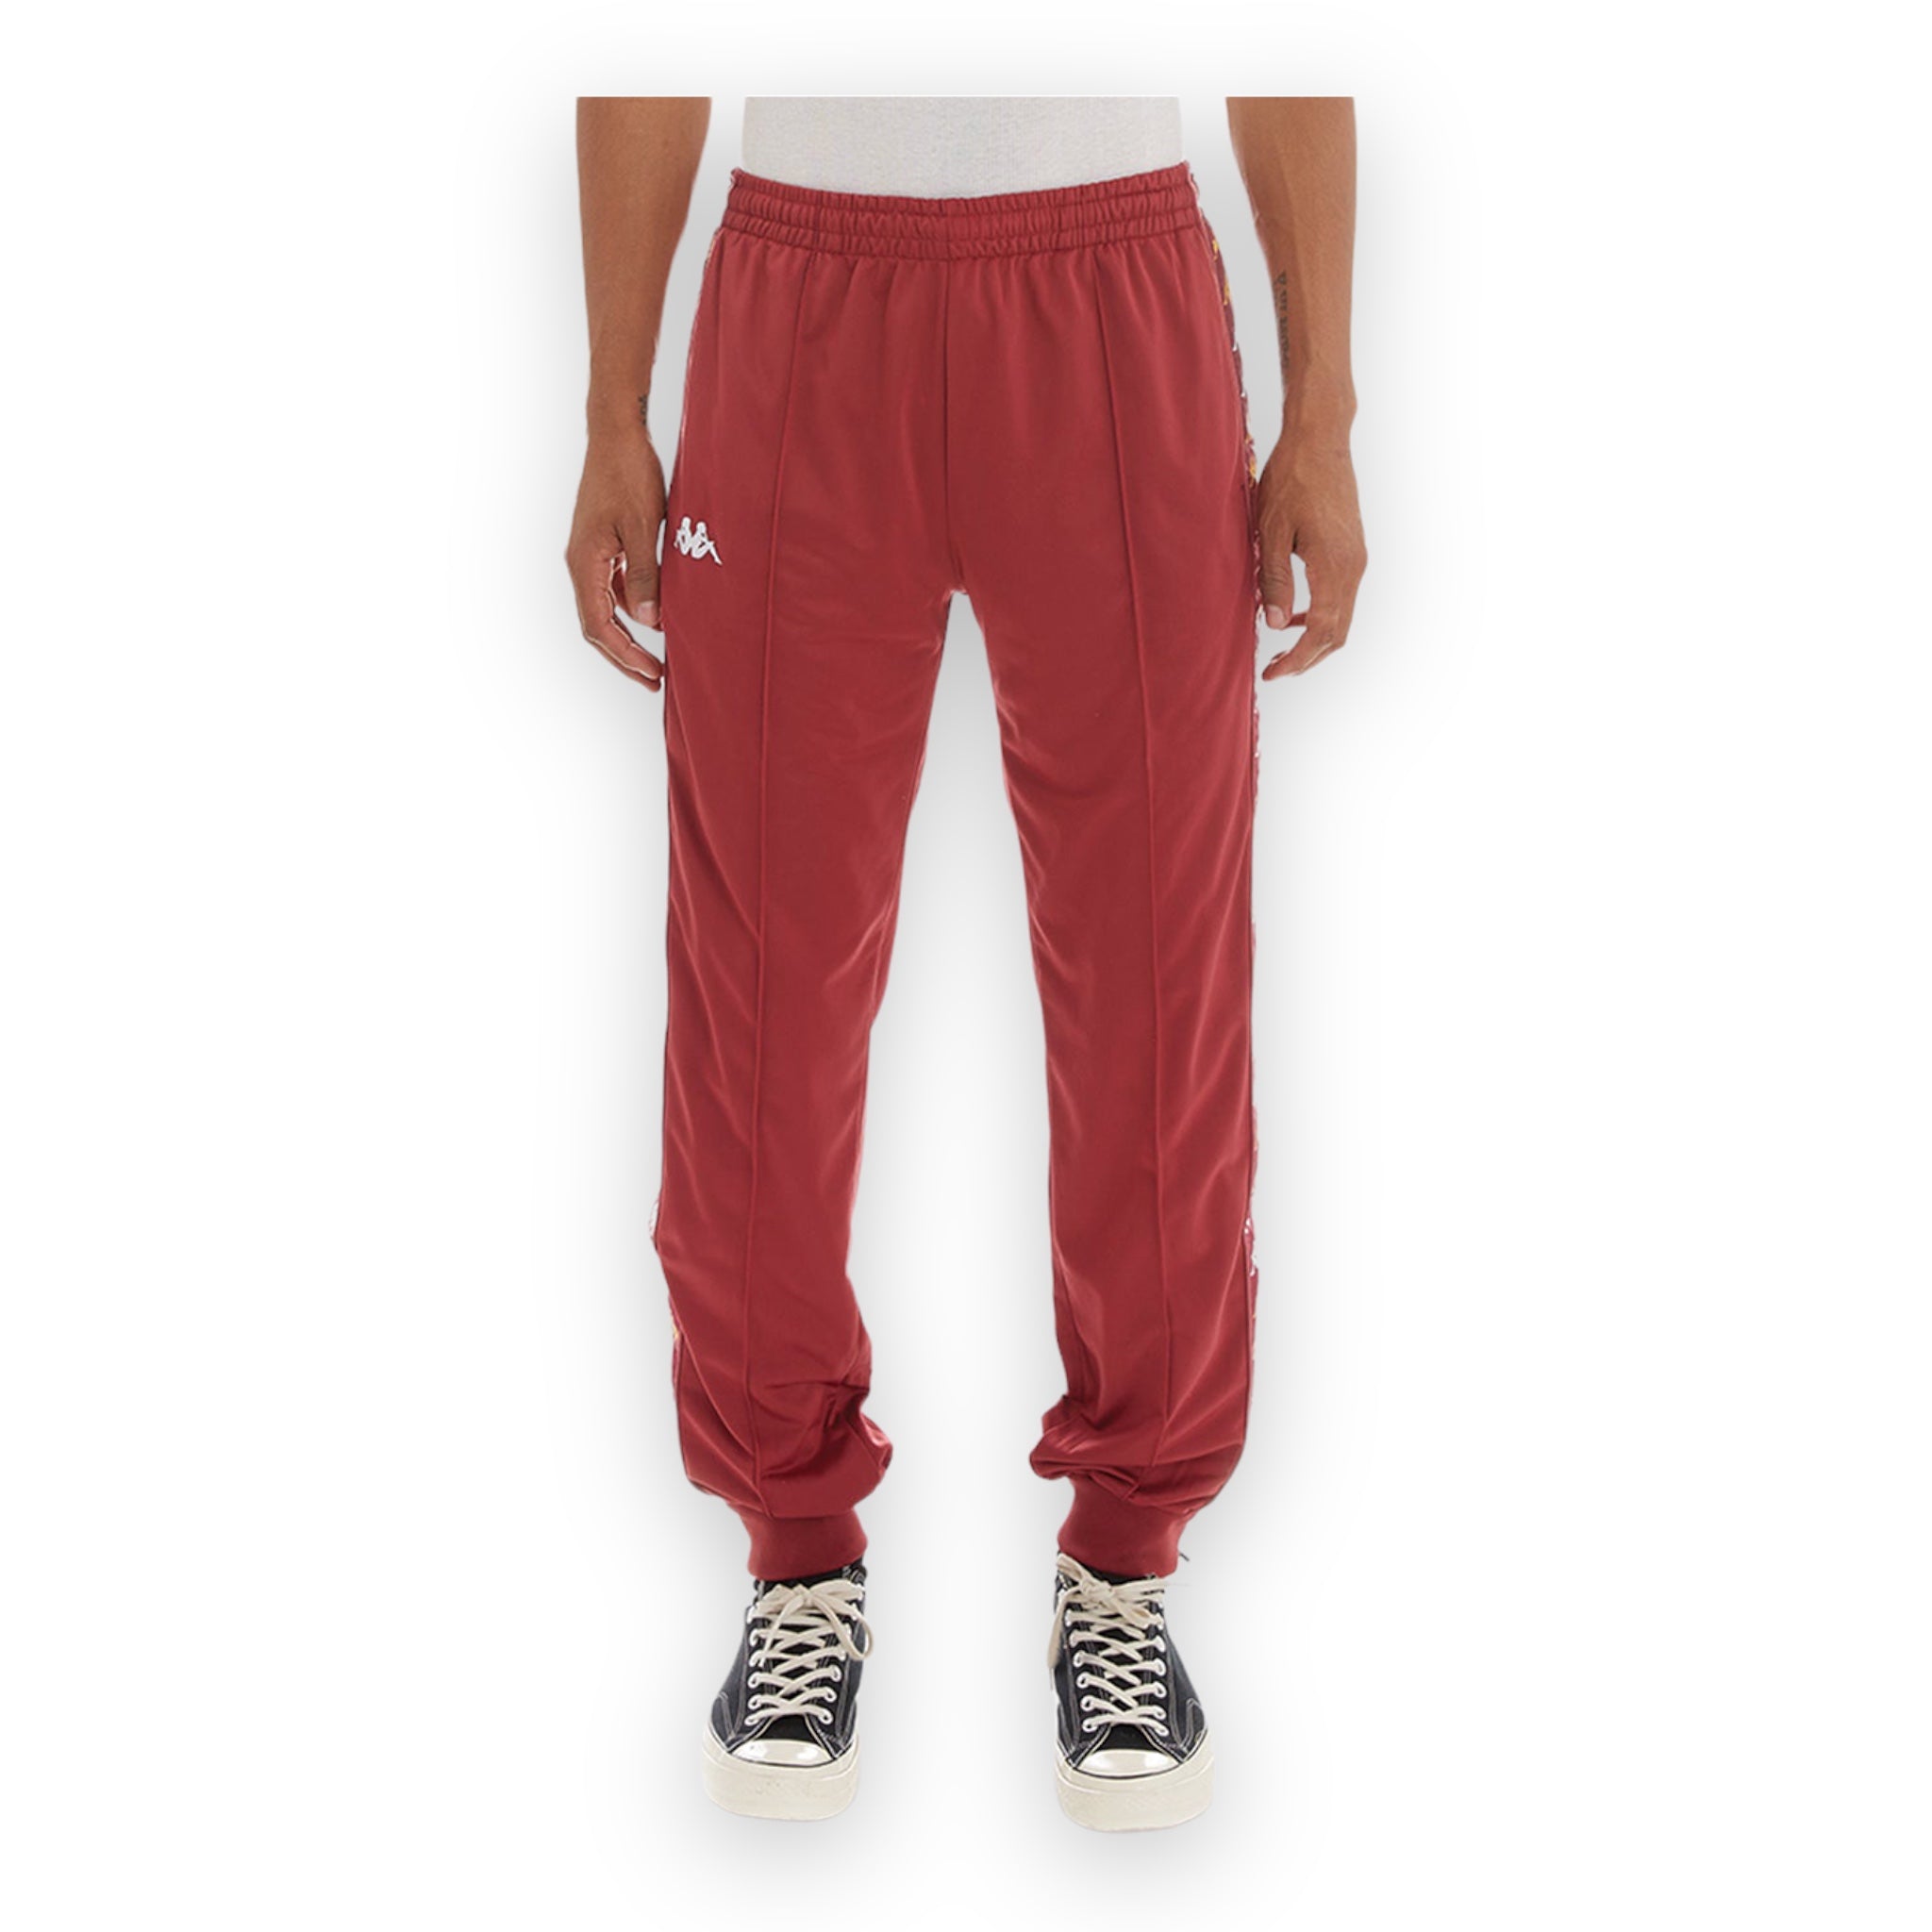 Kappa Snap Track Pants Mens Size Small | eBay